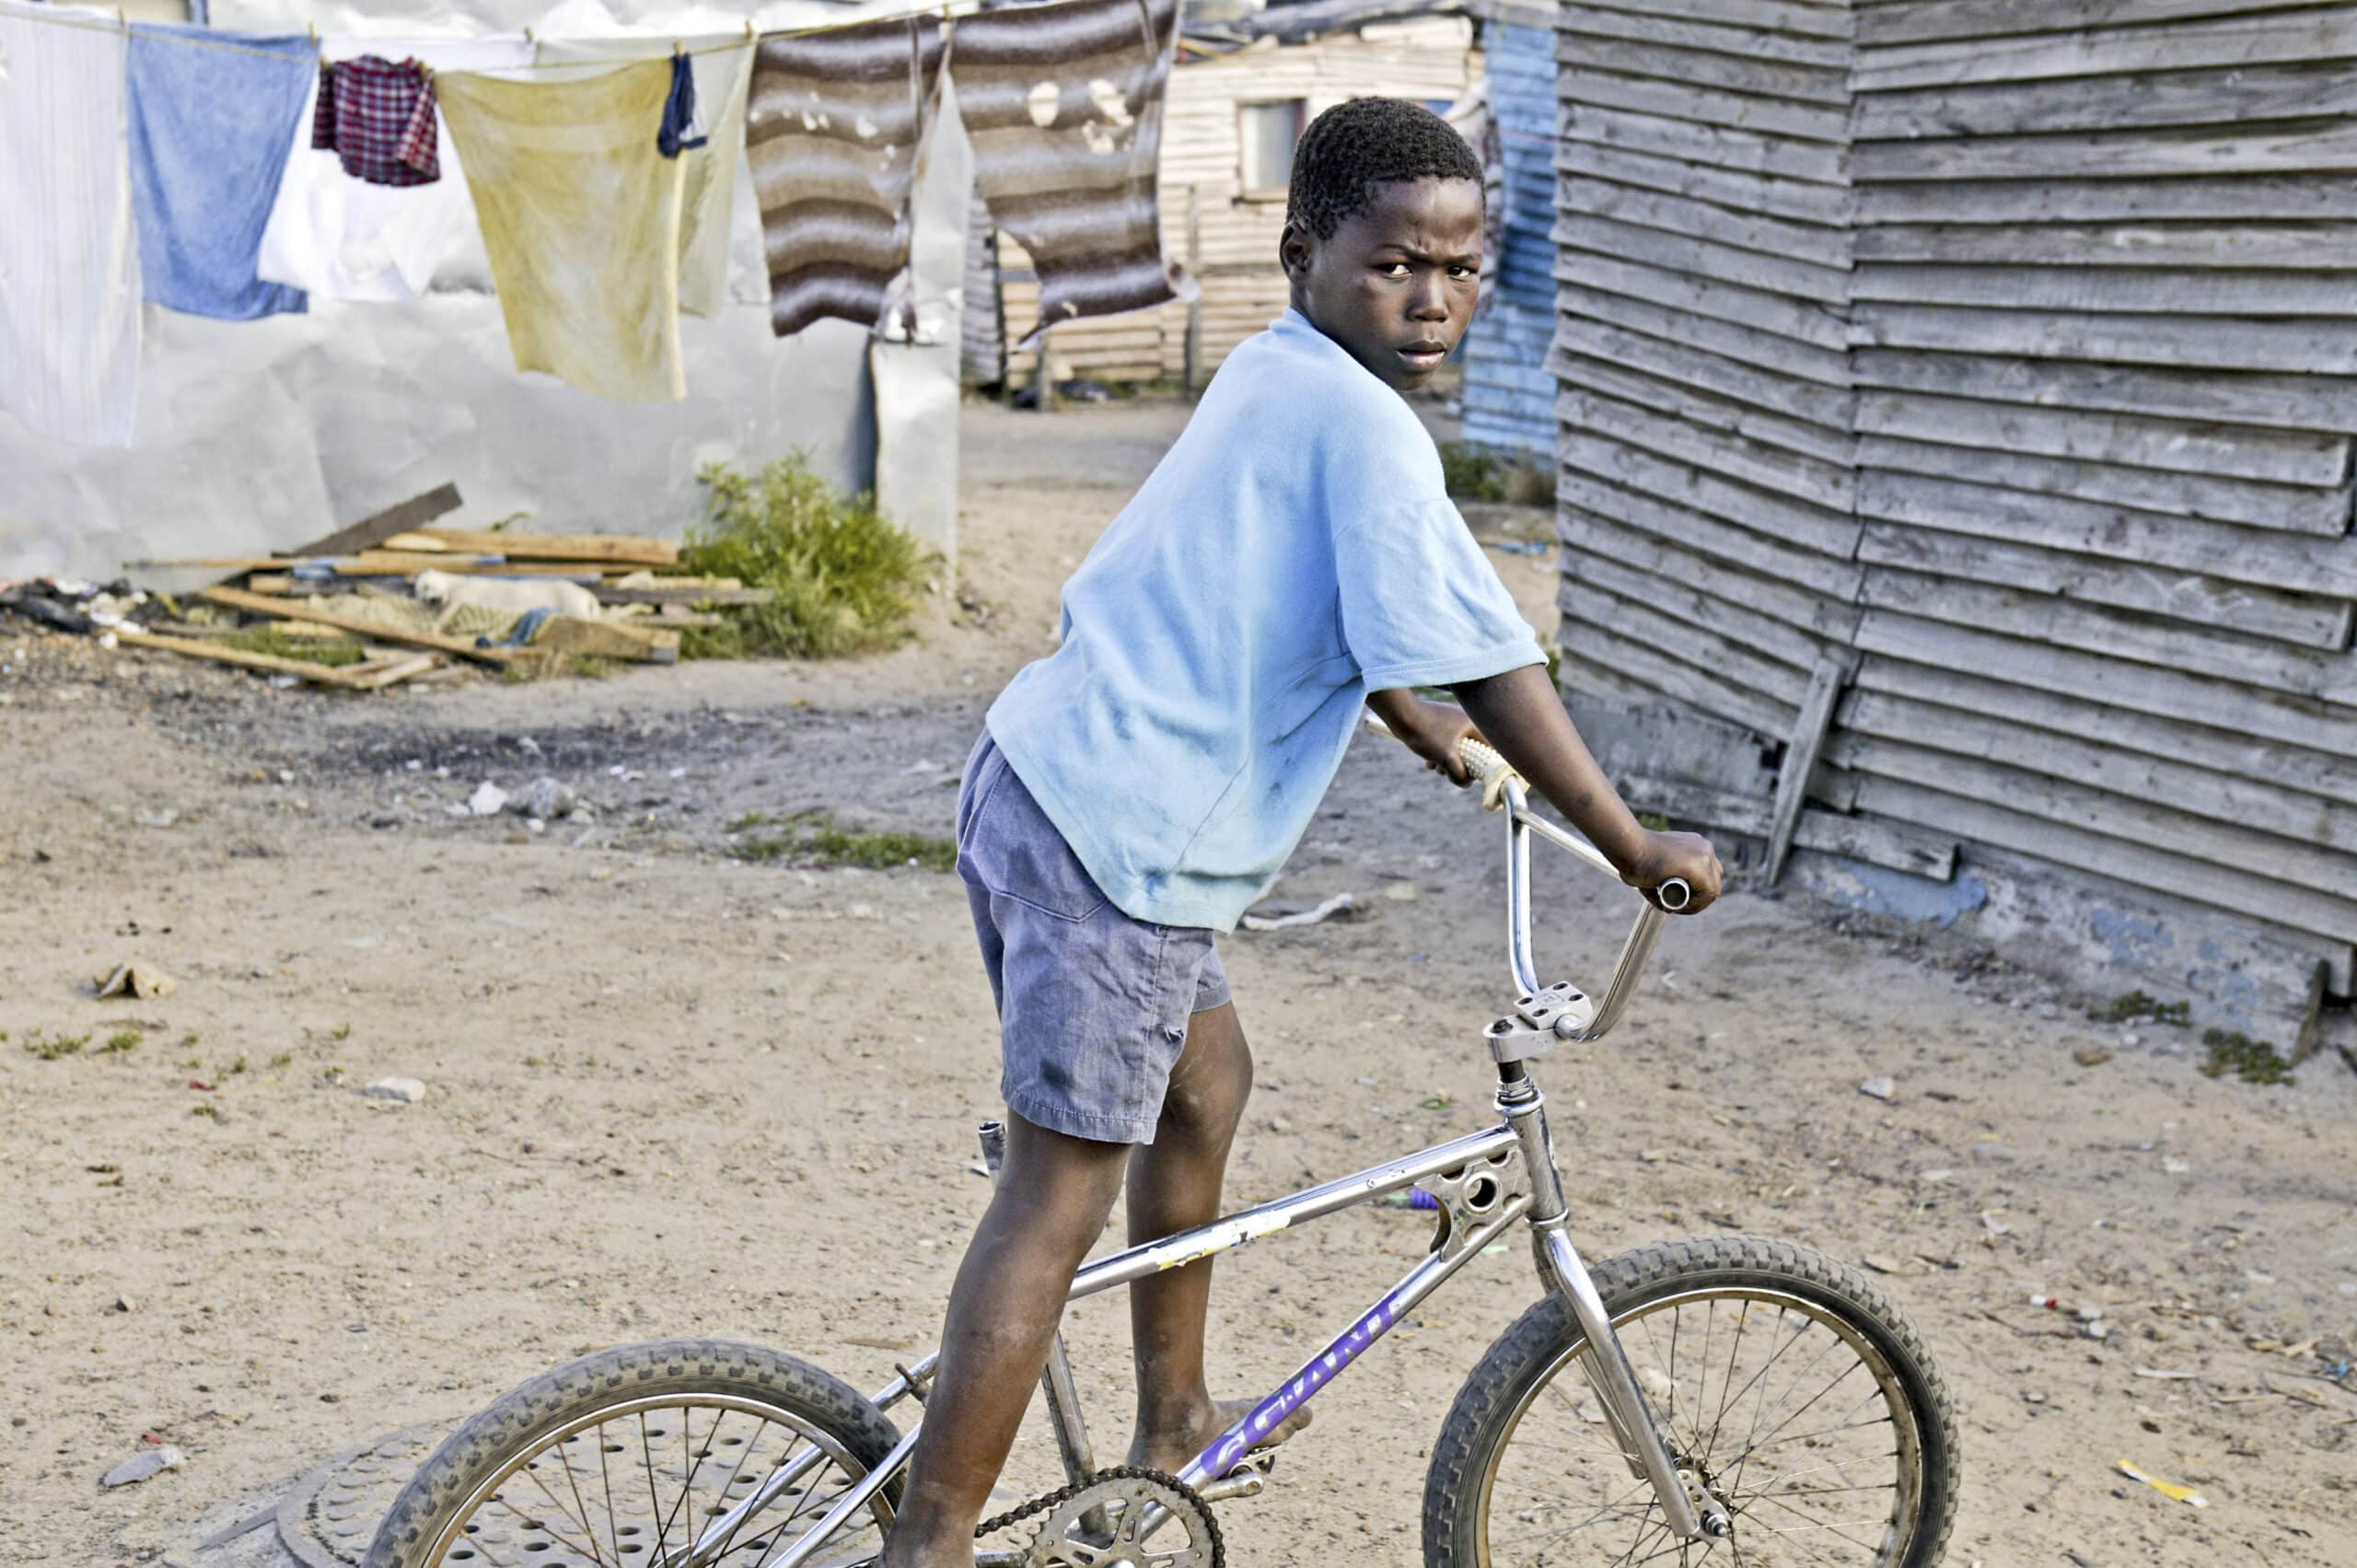 Ein kleiner Junge steht mit seinem Fahrrad in einer Elendsviertelgegend. Im Hintergrund hängen Kleider und überall liegt Schutt herum. Er blickt mit ernster Miene zurück. © Fotografie Tomas Rodriguez